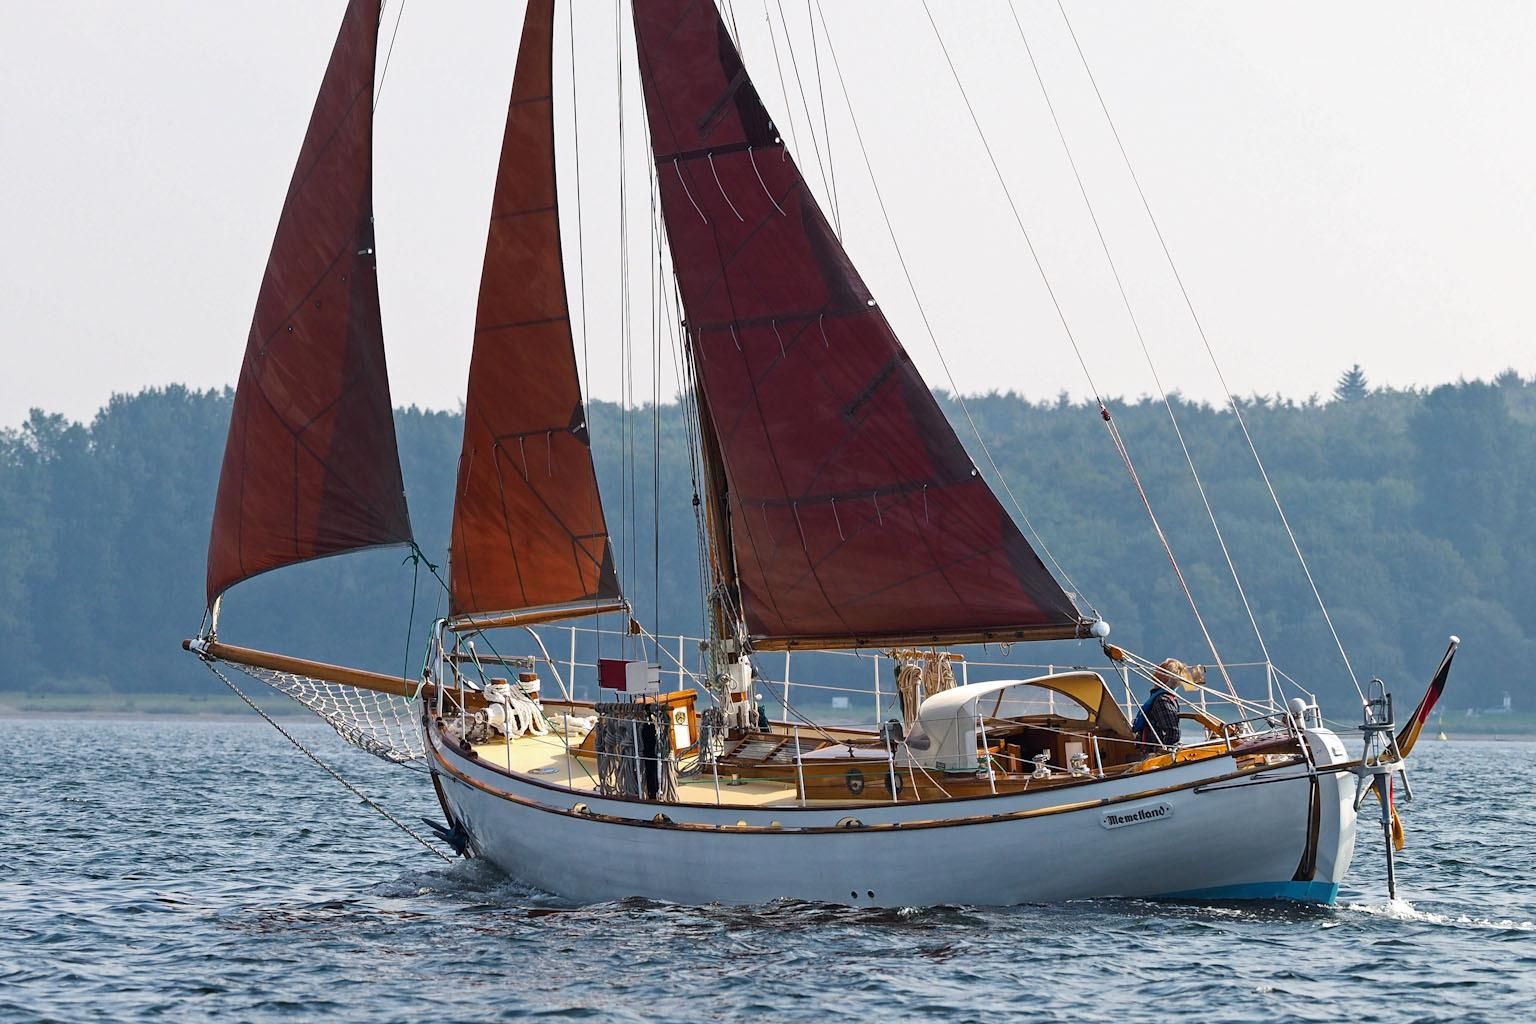 35 foot wooden sailboat